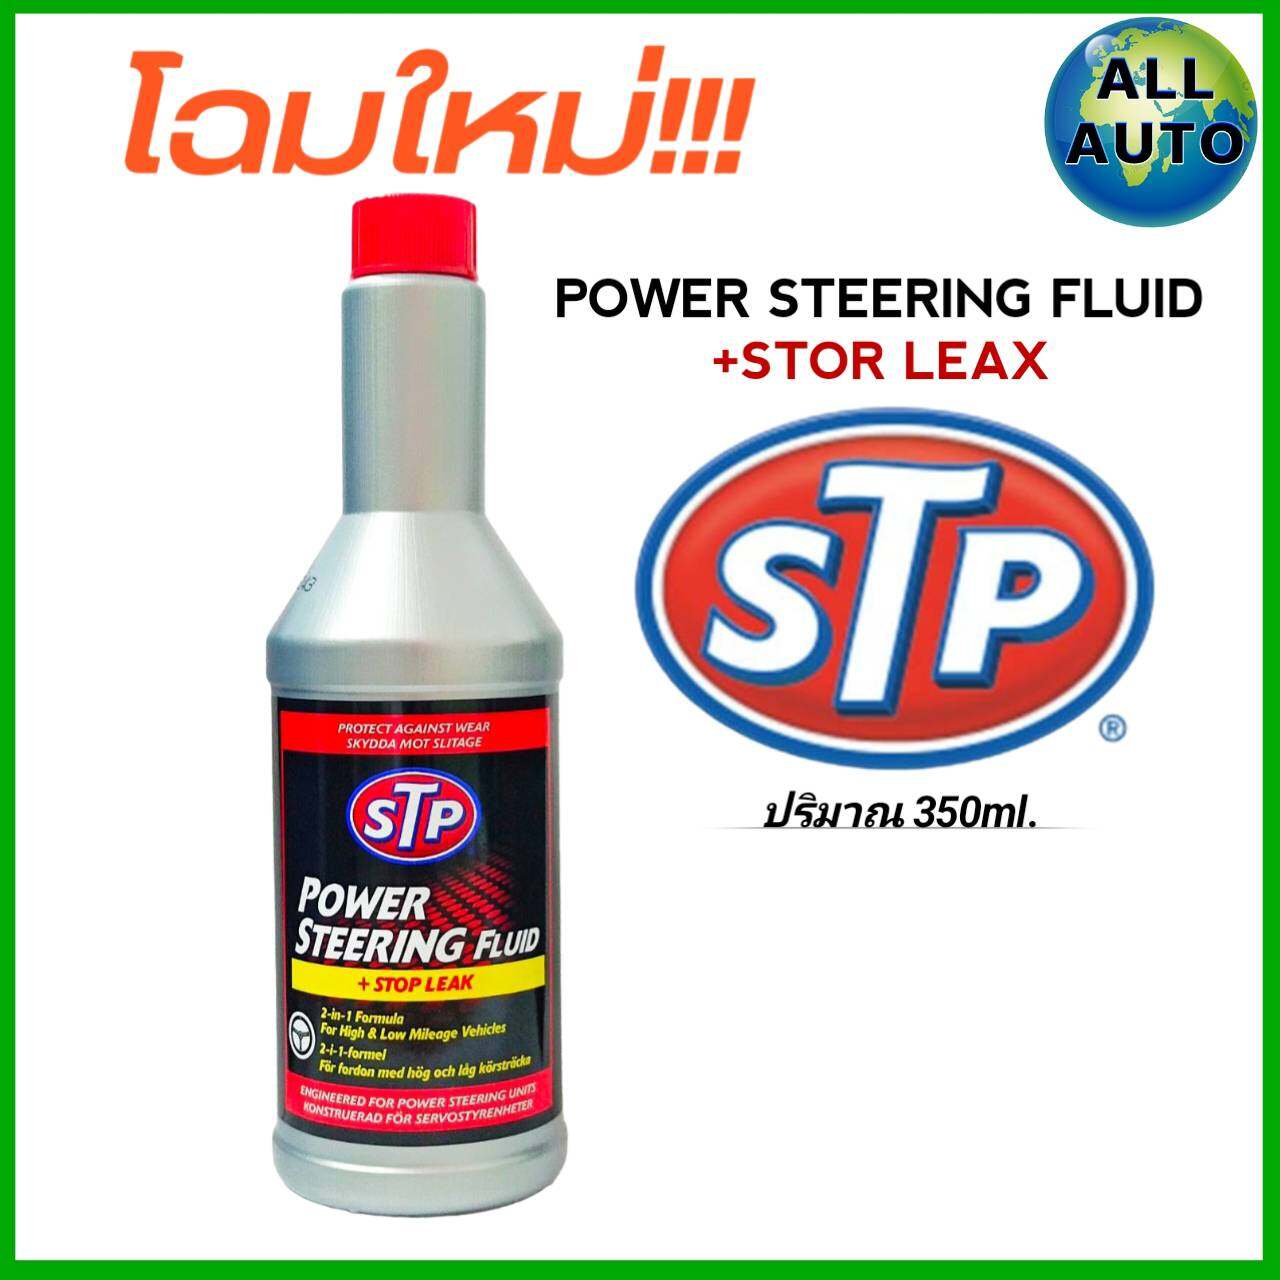 ข้อมูลเกี่ยวกับ STP น้ำมันพาวเวอร์ สูตรหยุดรั่ว STP Power Steering Fluid & Stop Leak ( 350 mL. )